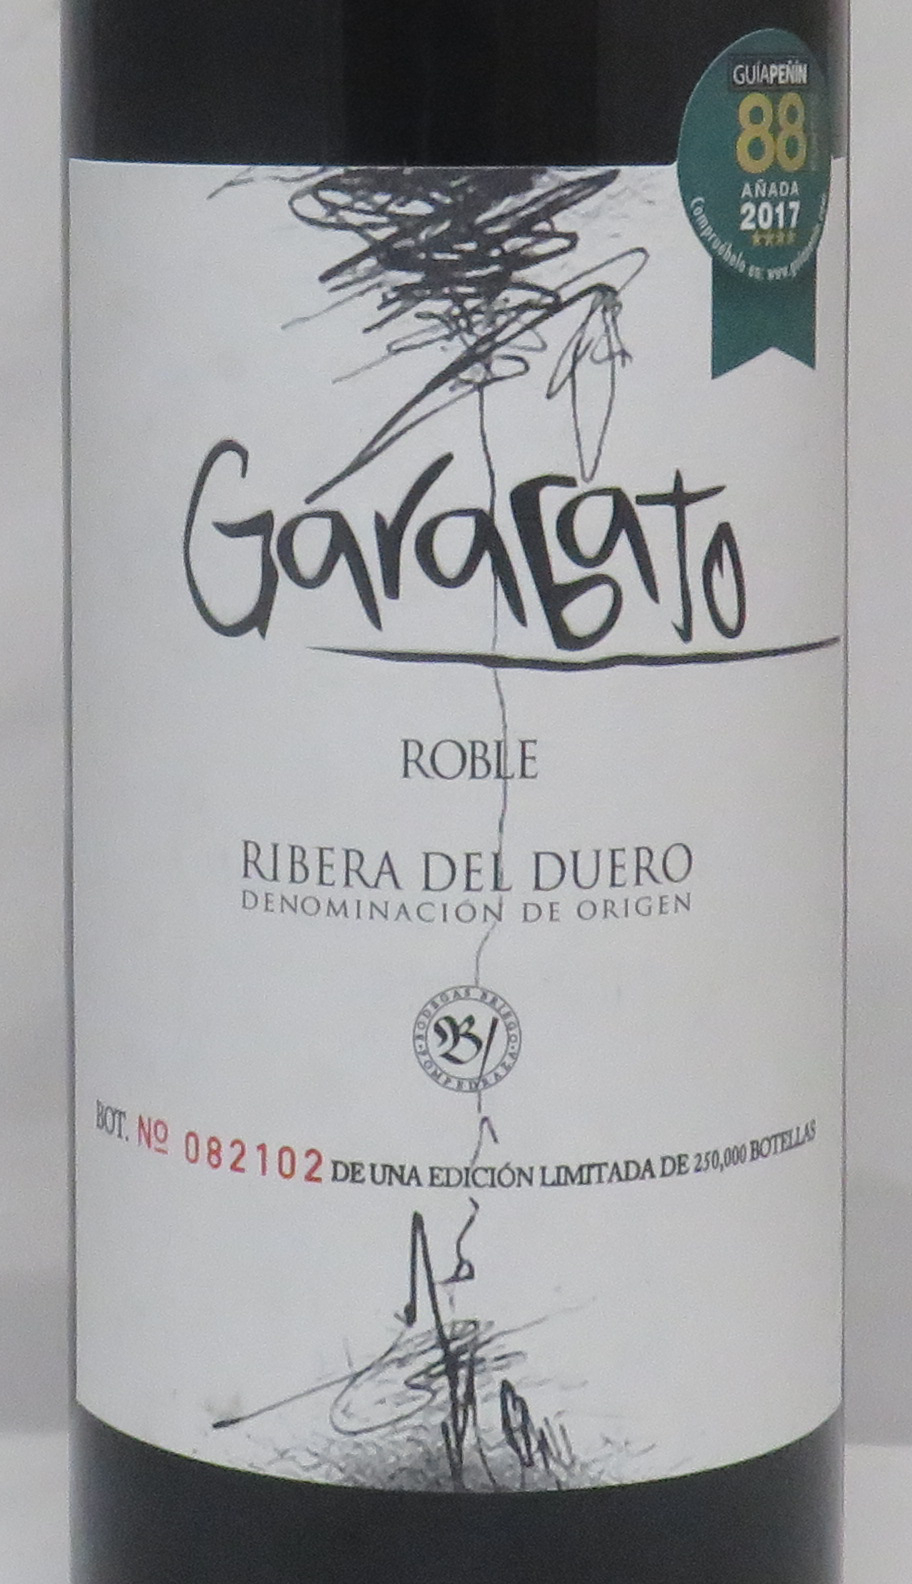 Garabato, Roble - No sé de vinos